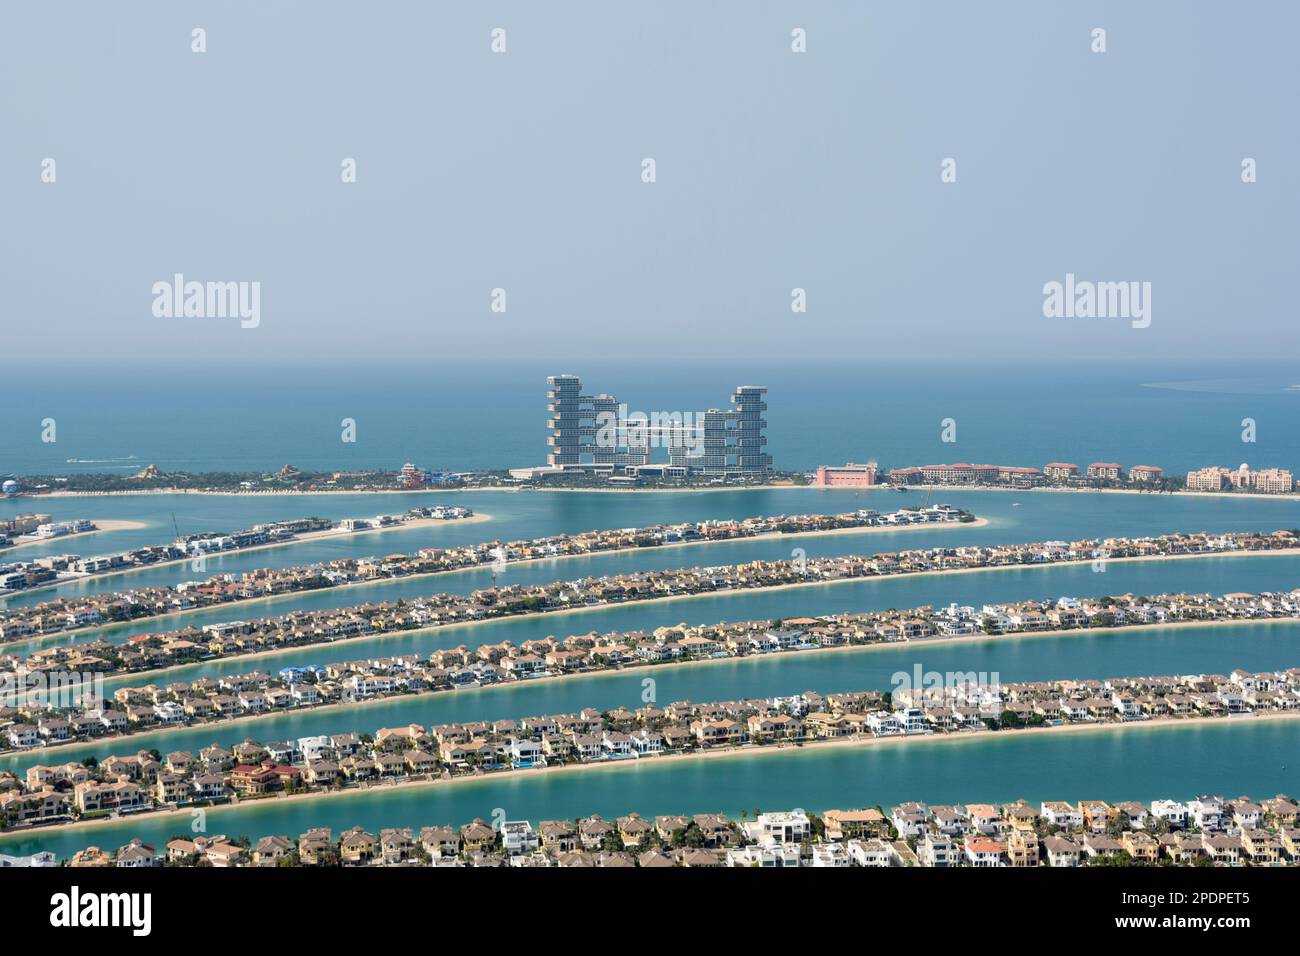 Vue sur Atlantis The Royal Hotel Resort depuis la vue à The Palm, Palm Jumeirah, Dubaï, Émirats arabes Unis Banque D'Images